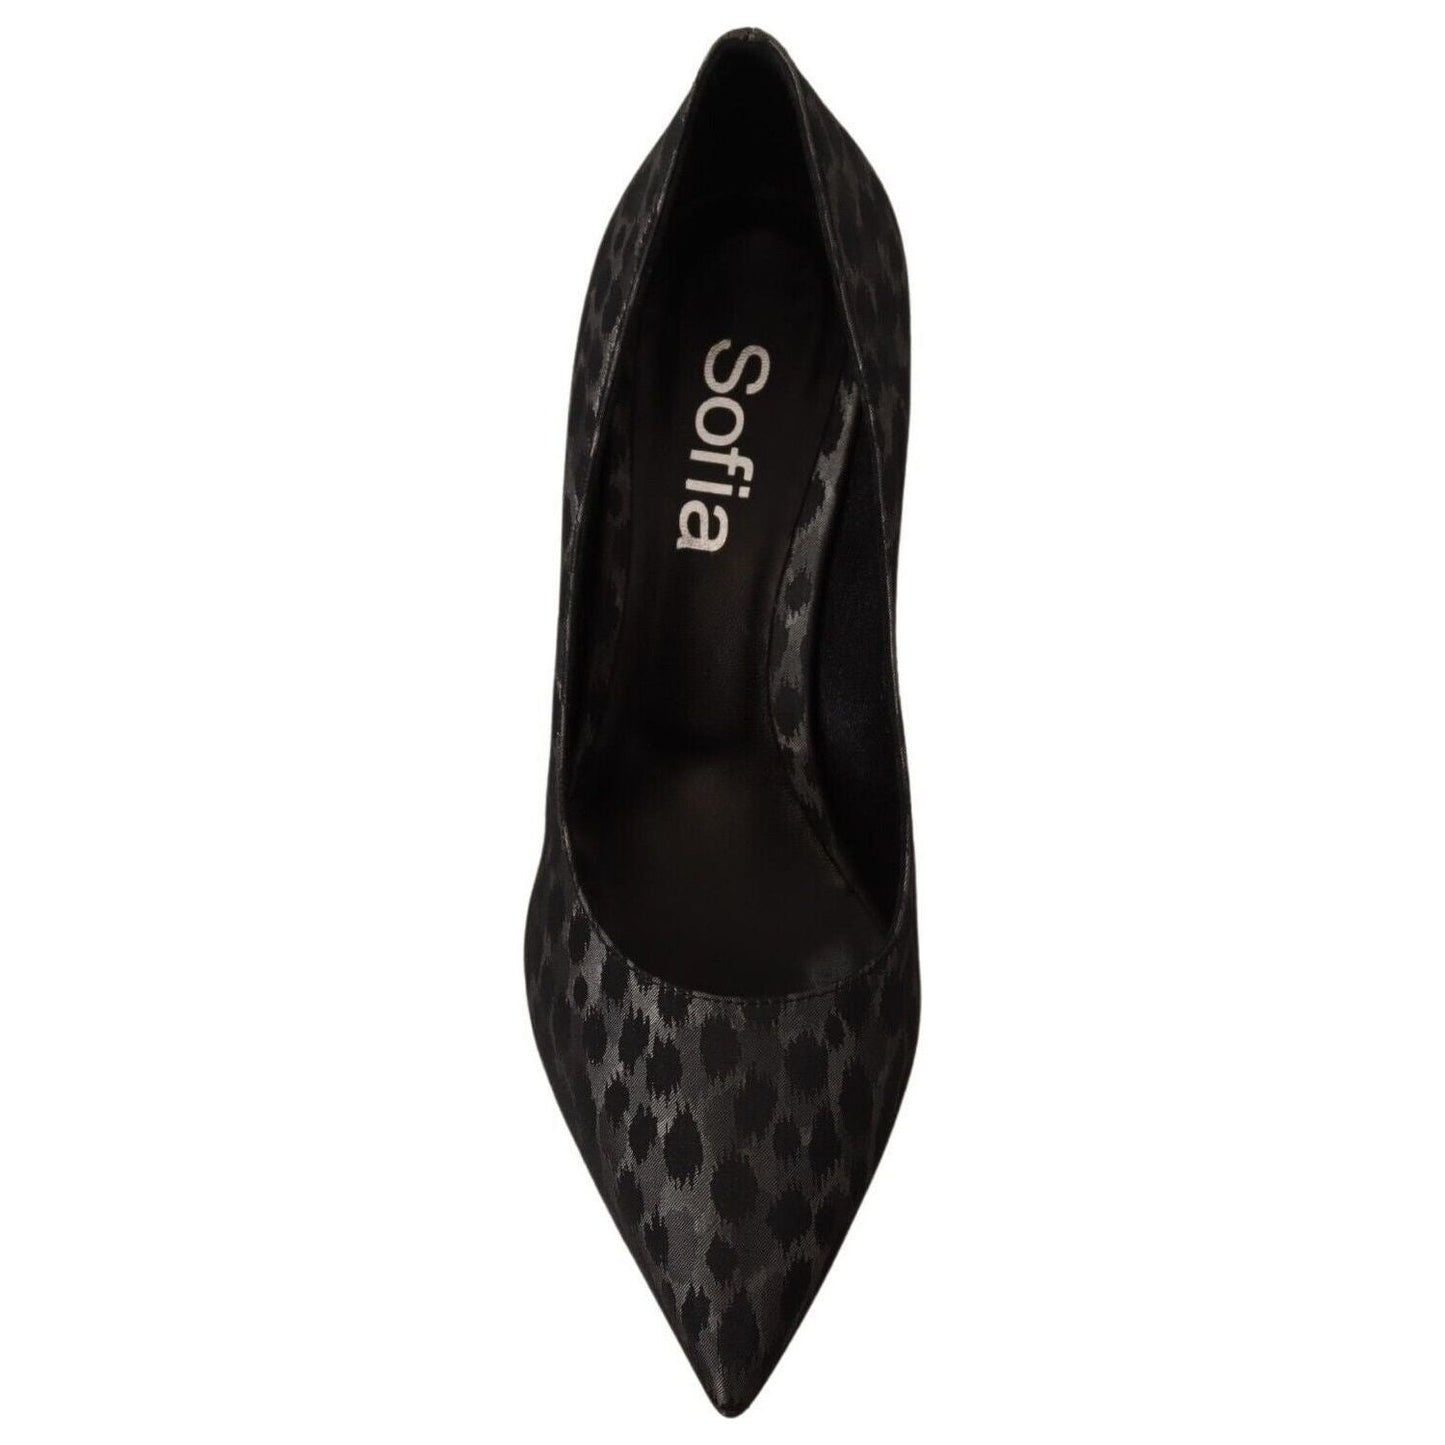 Sofia Elegant Black Leopard Print Leather Heels WOMAN PUMPS black-leopard-leather-stiletto-high-heels-pumps-shoes